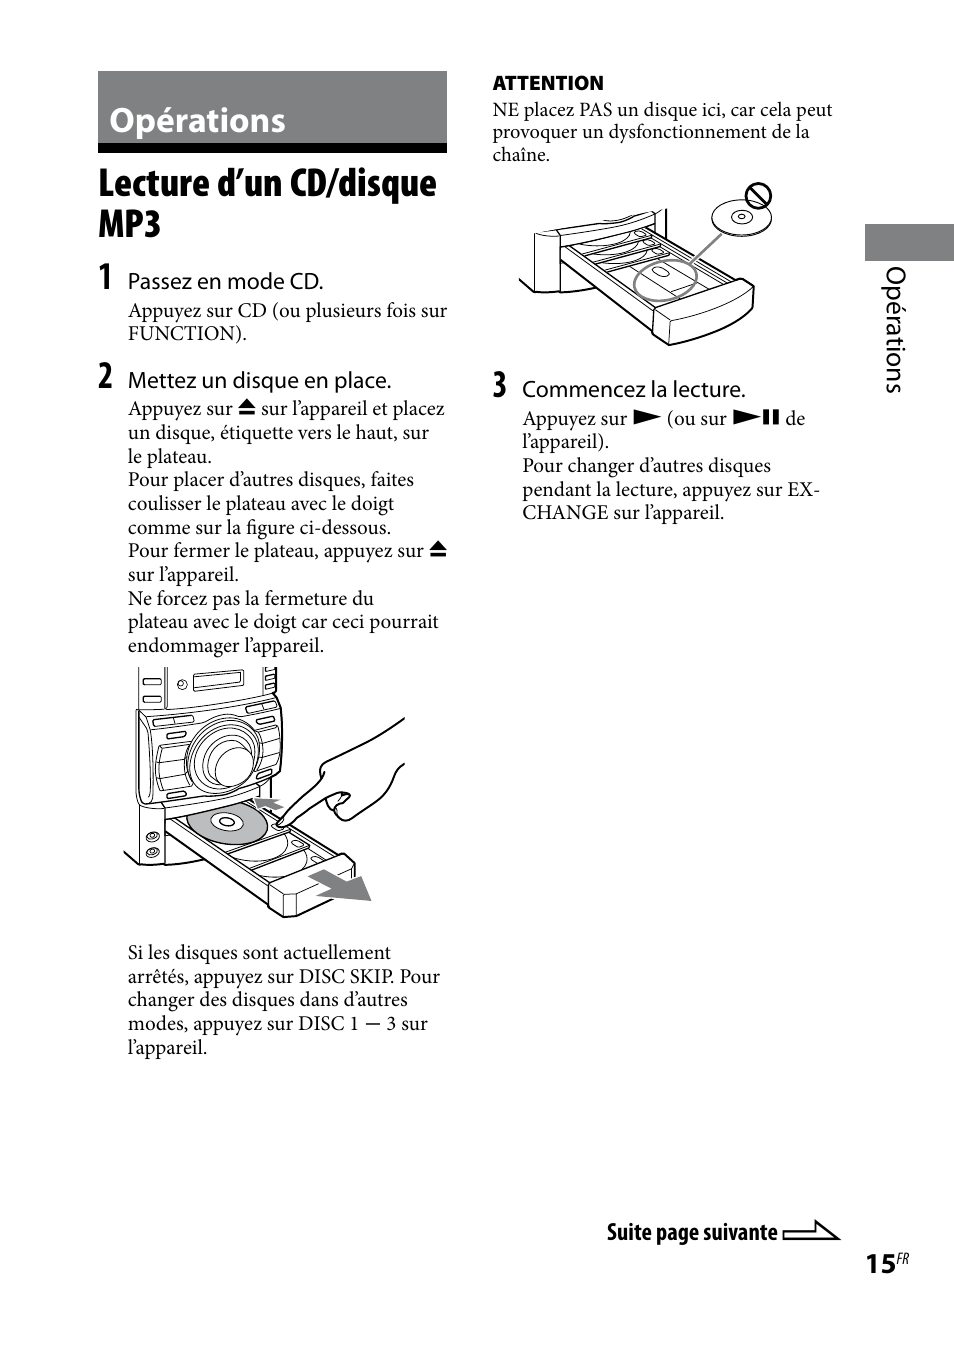 Opérations, Lecture d’un cd/disque mp3 | Sony MHC-EC69 Manuel d'utilisation | Page 15 / 44